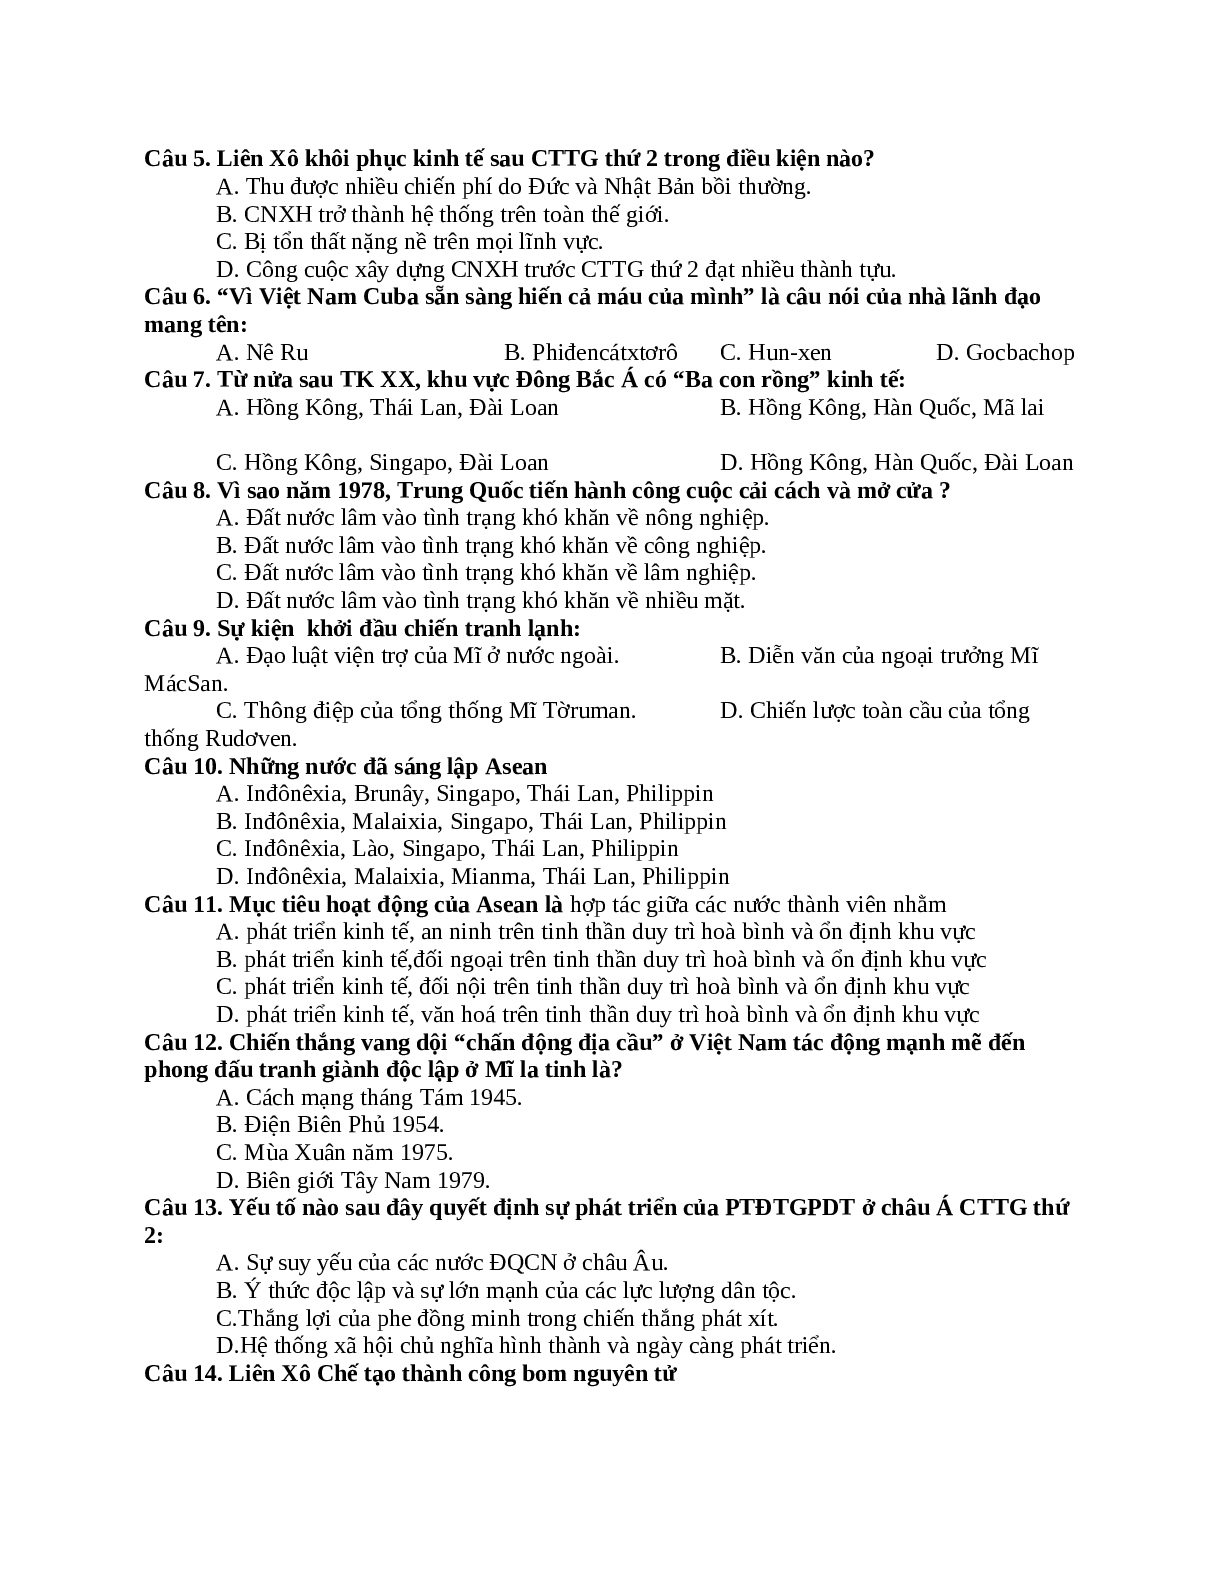 Giáo án Lịch sử 12 kiểm tra 1 tiết ôn tập chương mới nhất (trang 2)